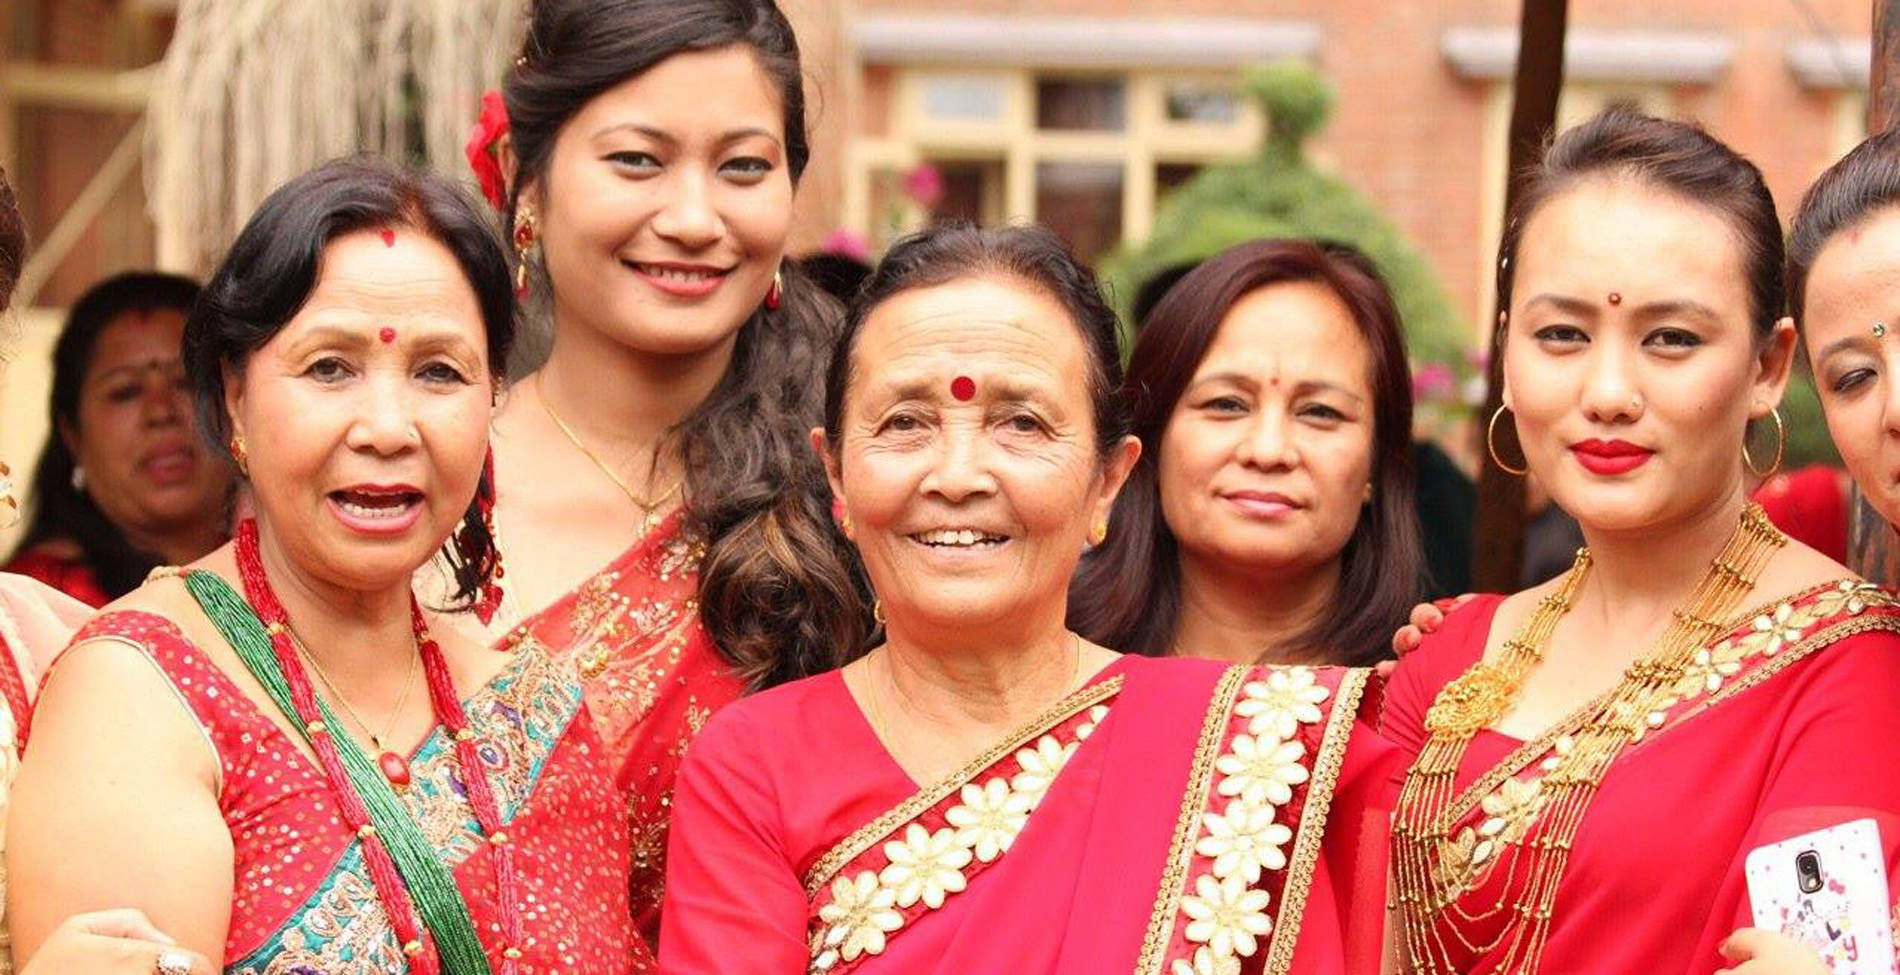 Ποια είναι η σύγχρονη «Μητέρα Τερέζα του Νεπάλ»